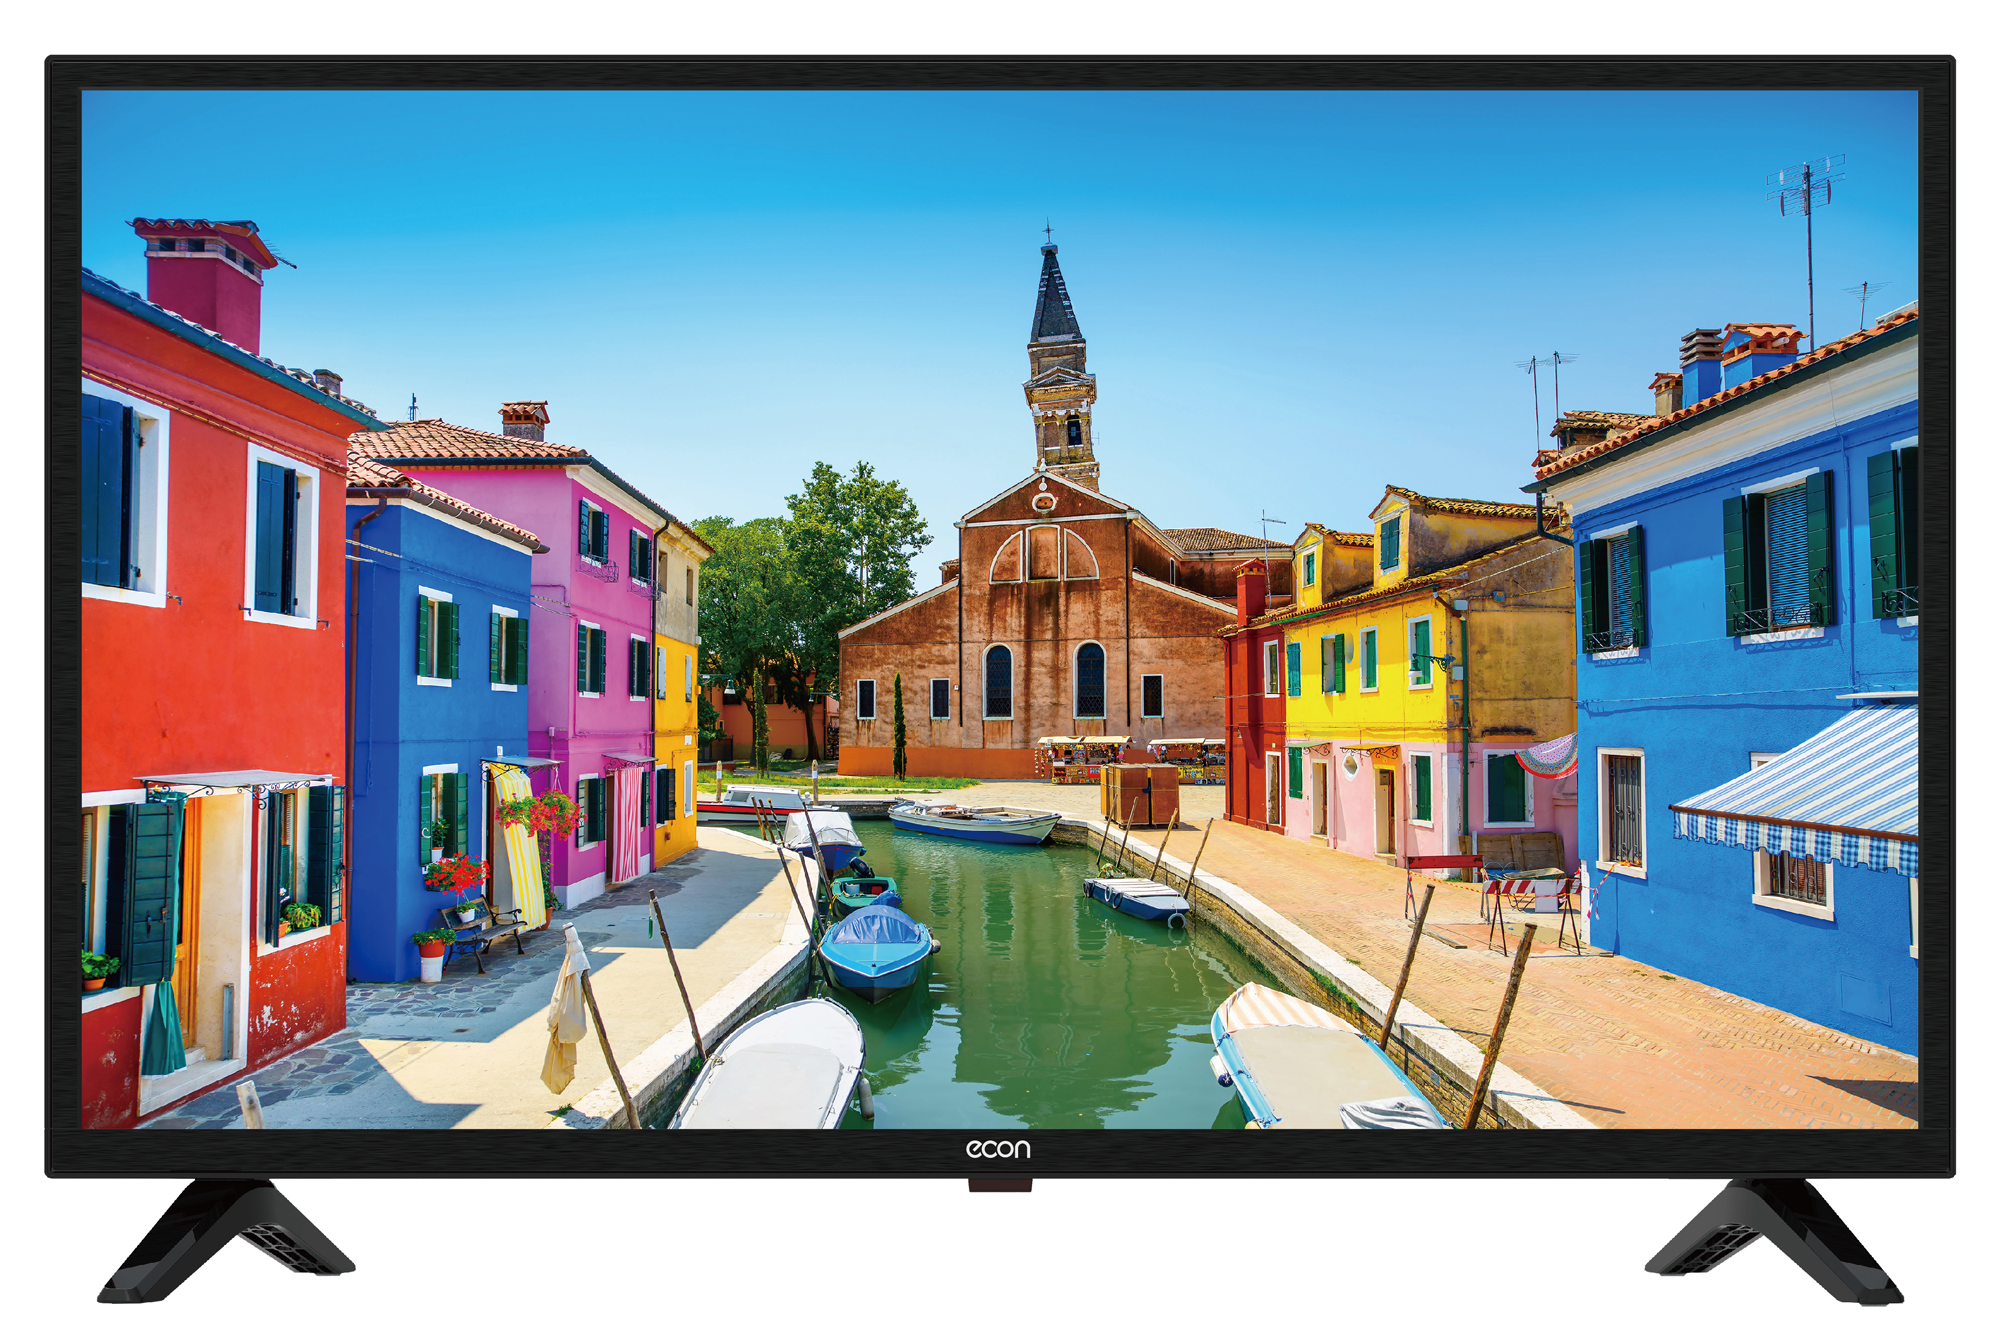 Картинка Smart телевизор ECON EX-39HS003B по разумной цене купить в интернет магазине mall.su